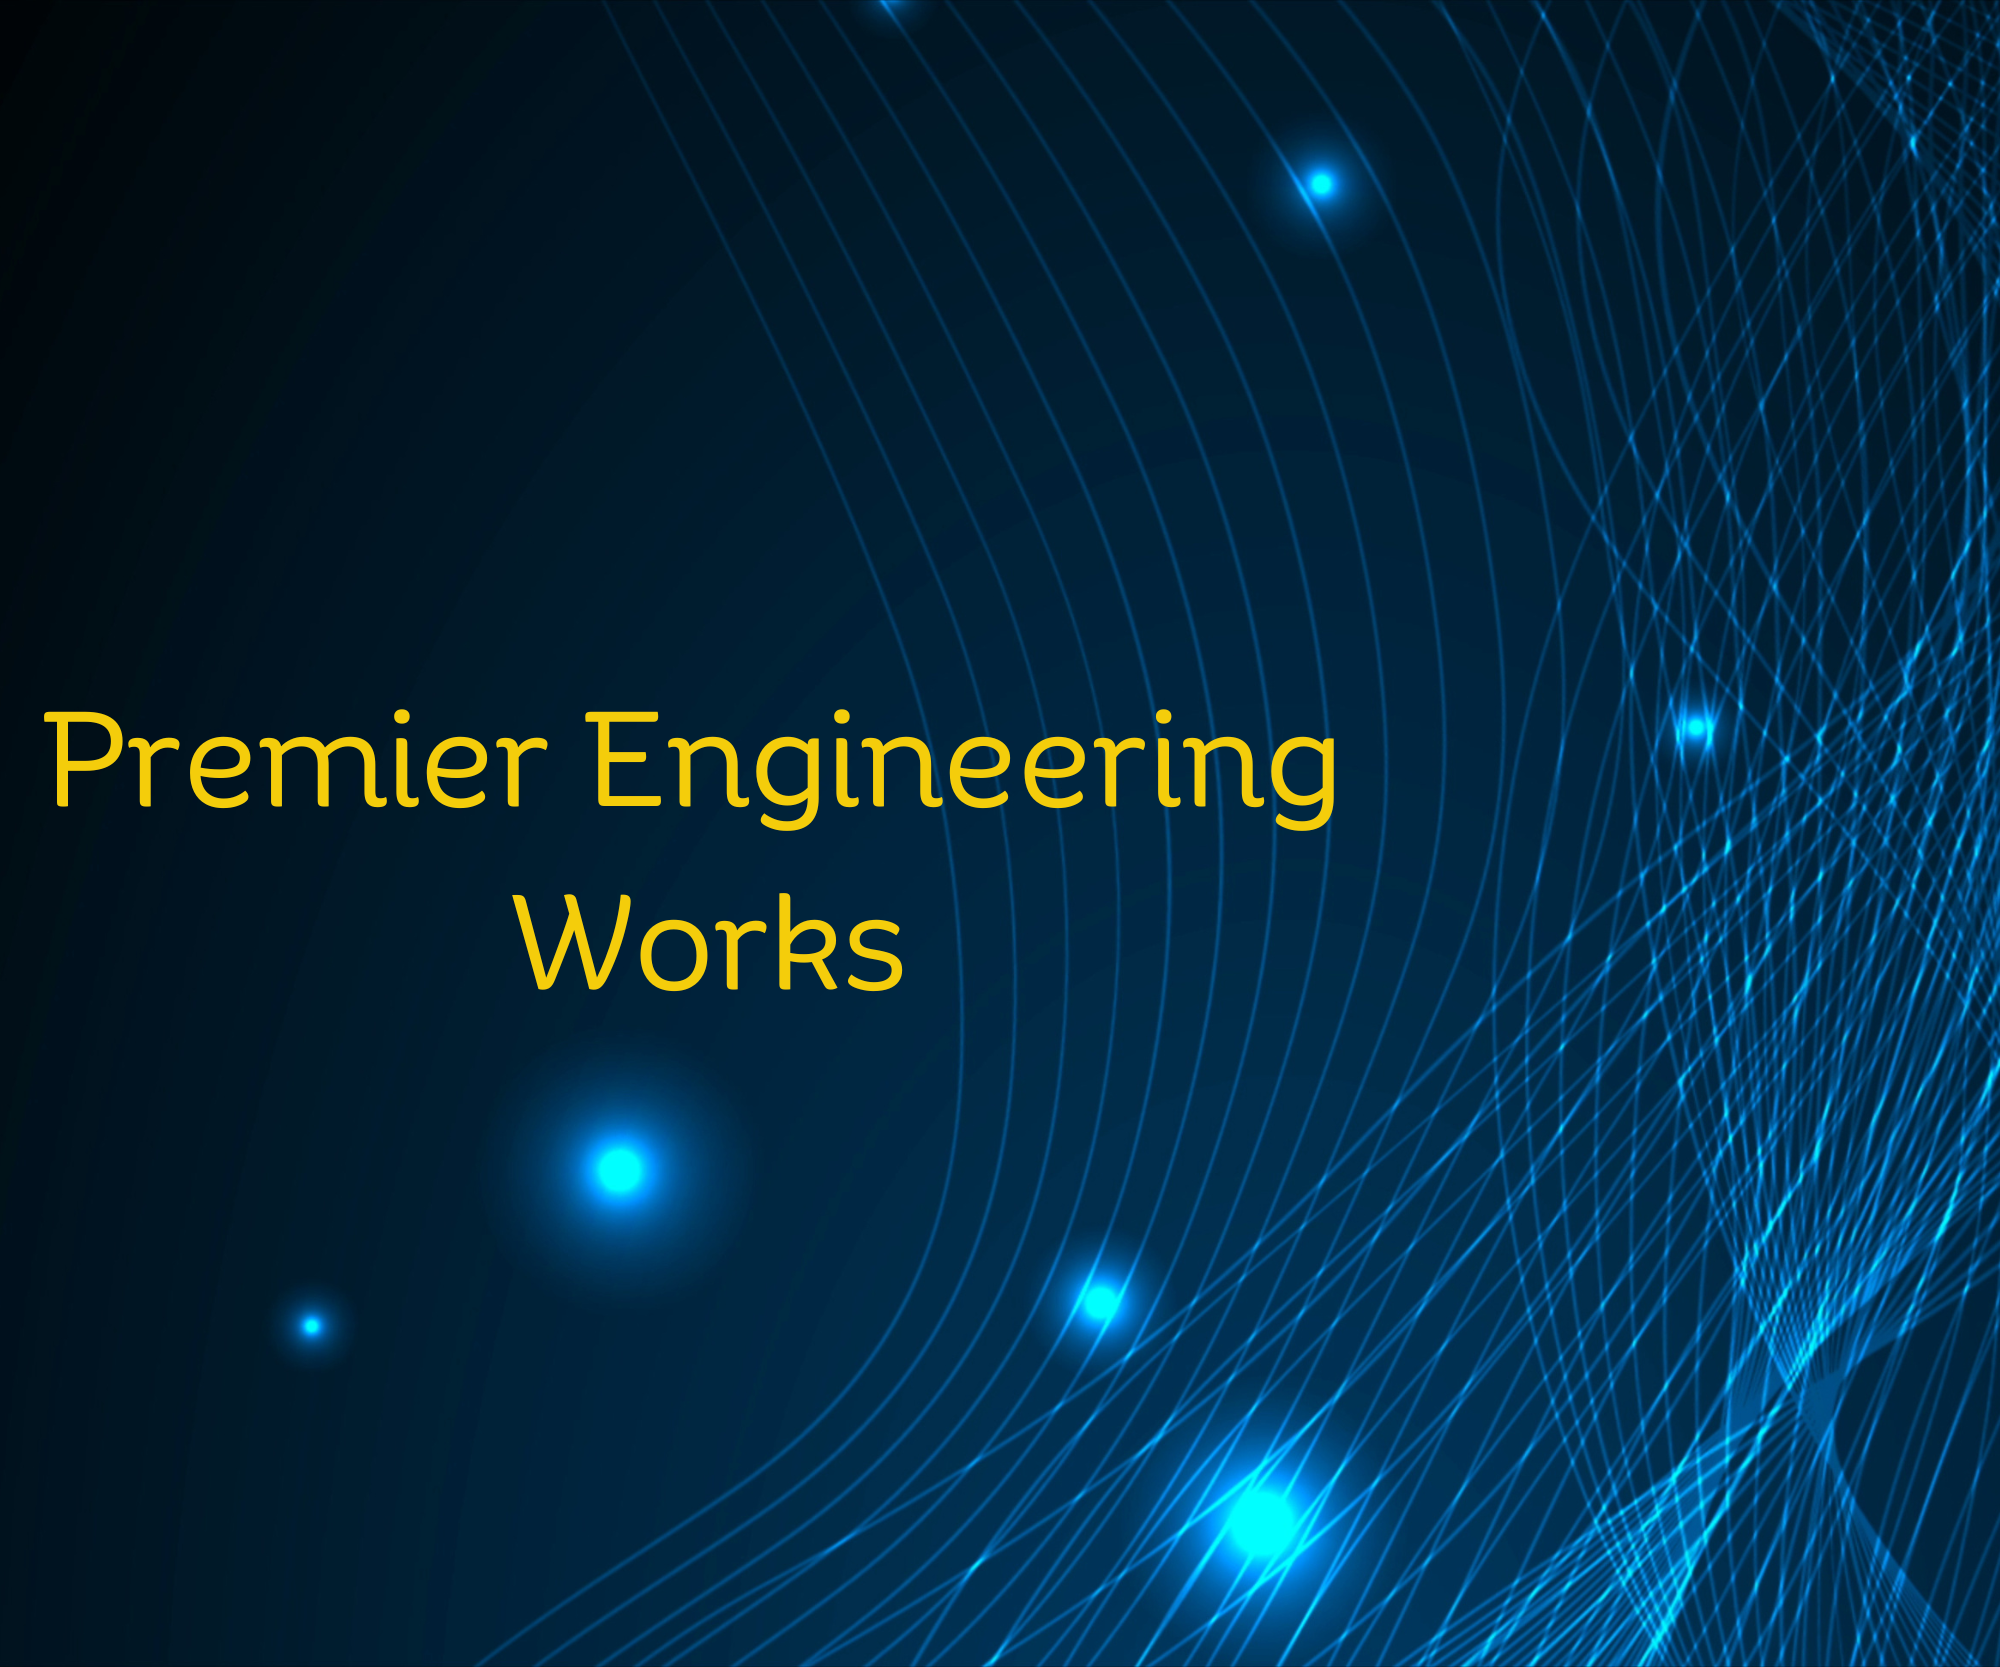 Premier Engineering Works